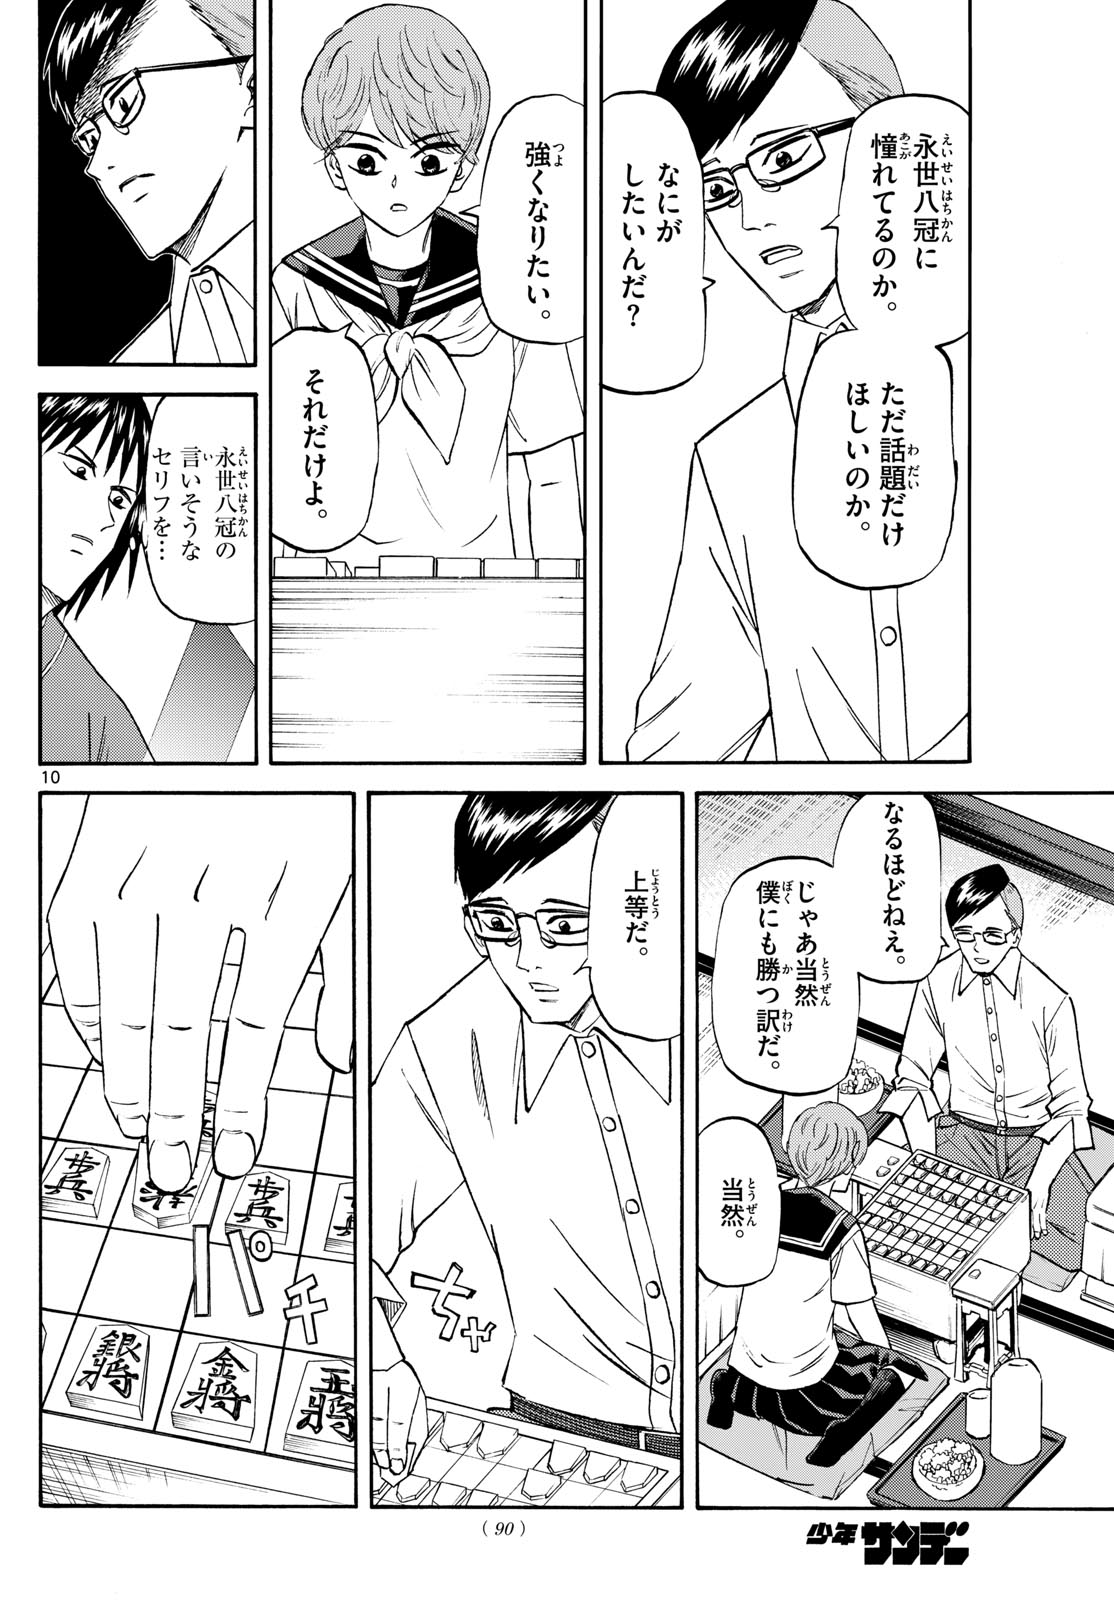 Tatsu to Ichigo - Chapter 196 - Page 10